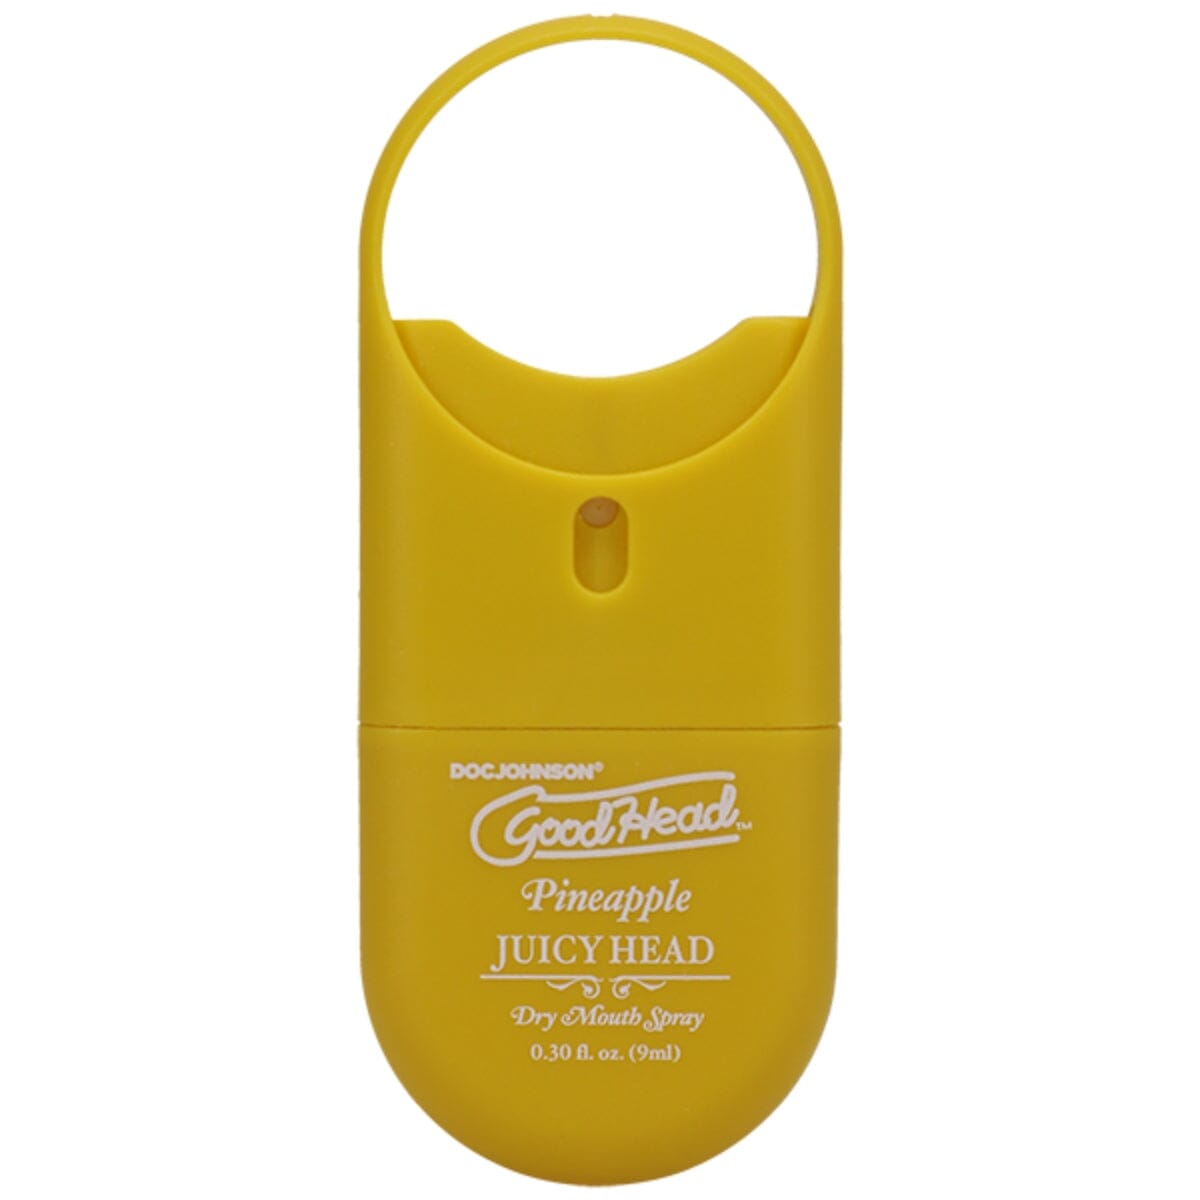 GoodHead- Juicy Head To-Go Oral Spray Oral Sprays GoodHead (ABS) 